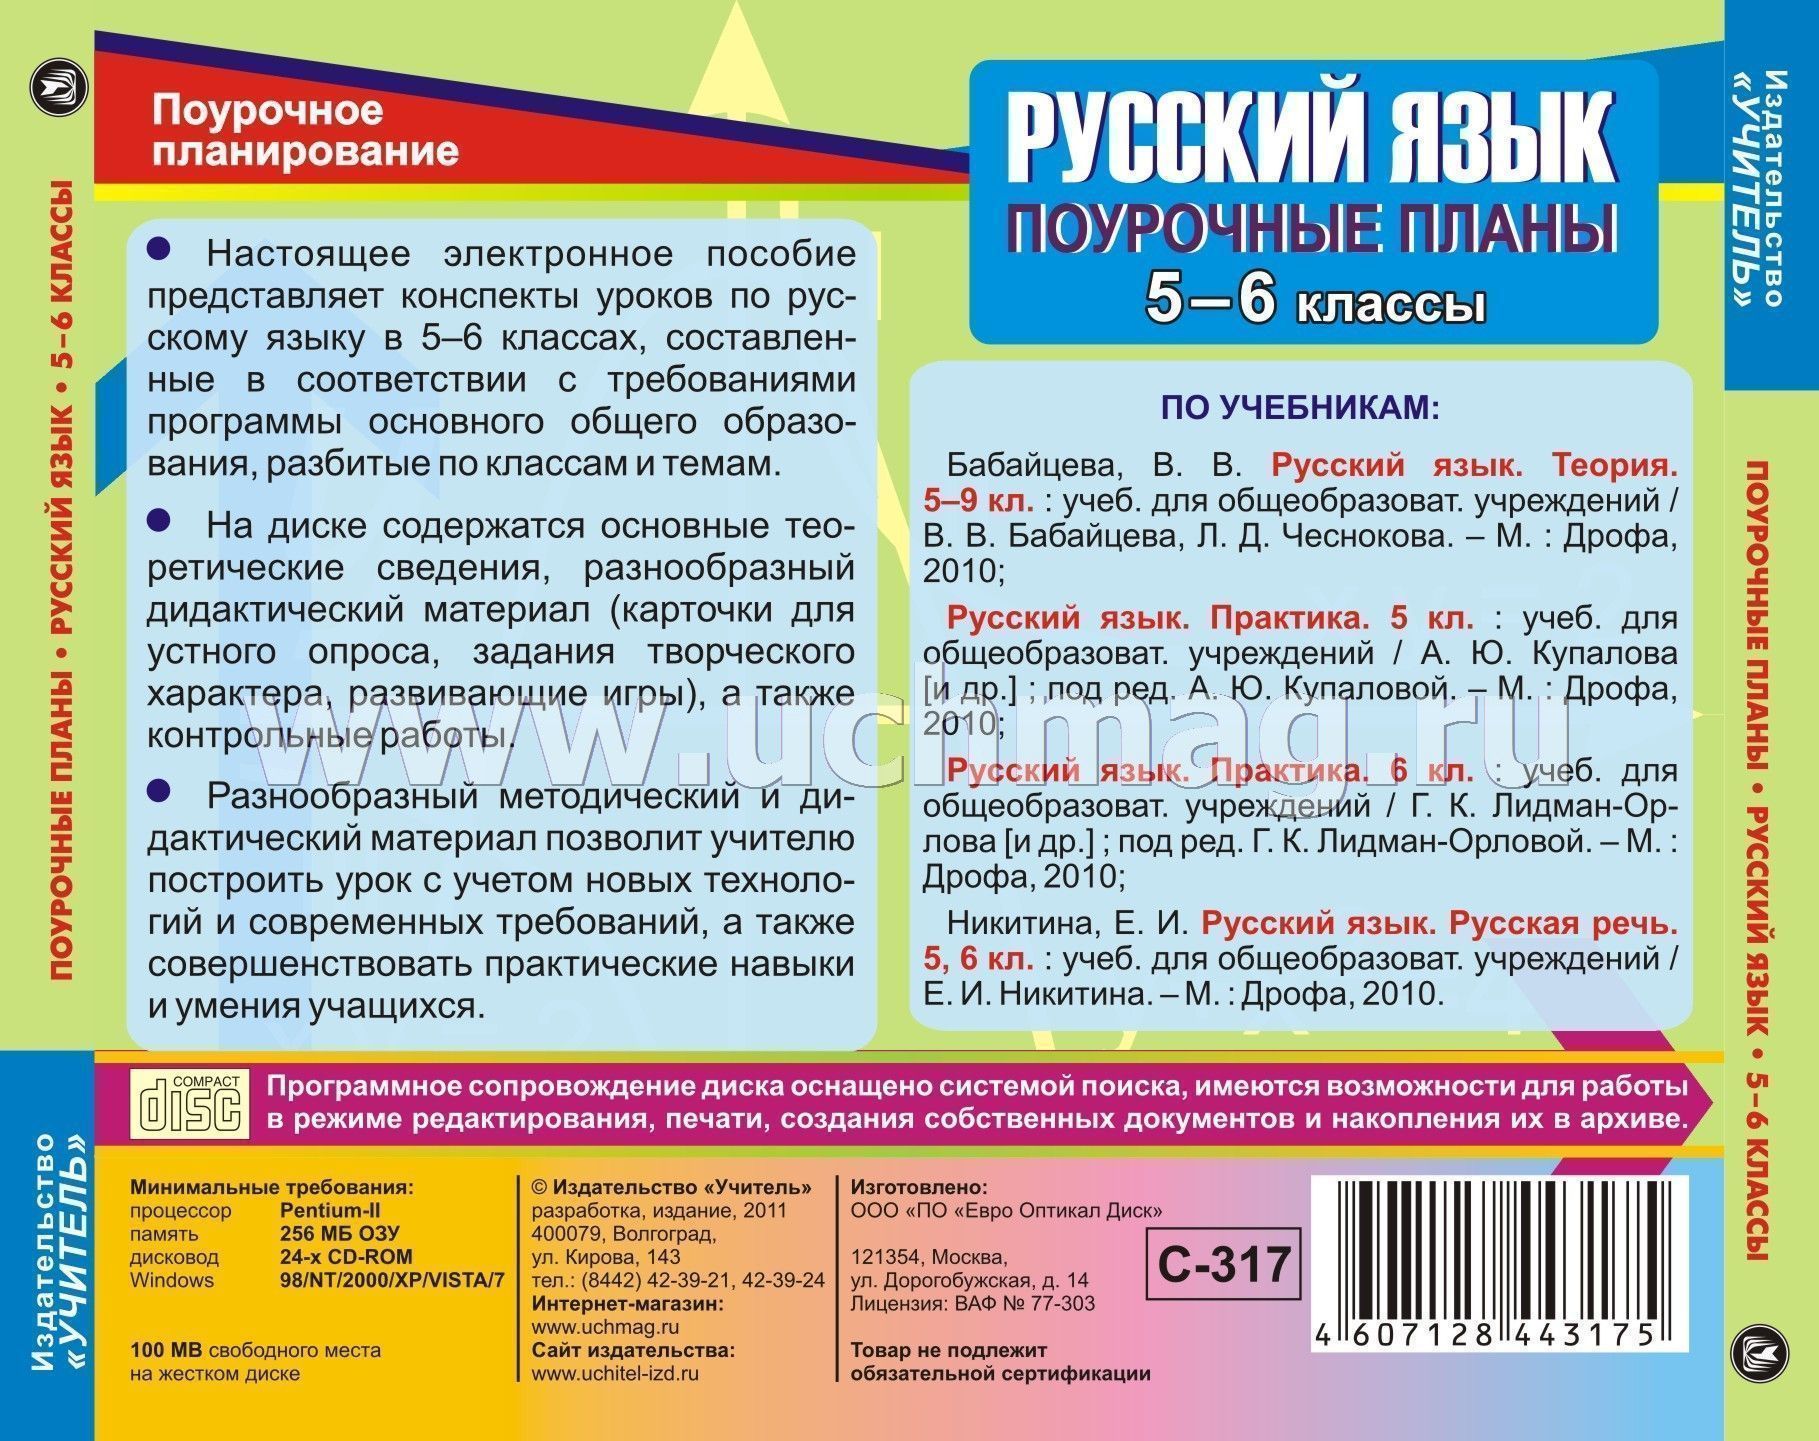 Скачать поурочные разработки к учебнику русский язык 6 класс